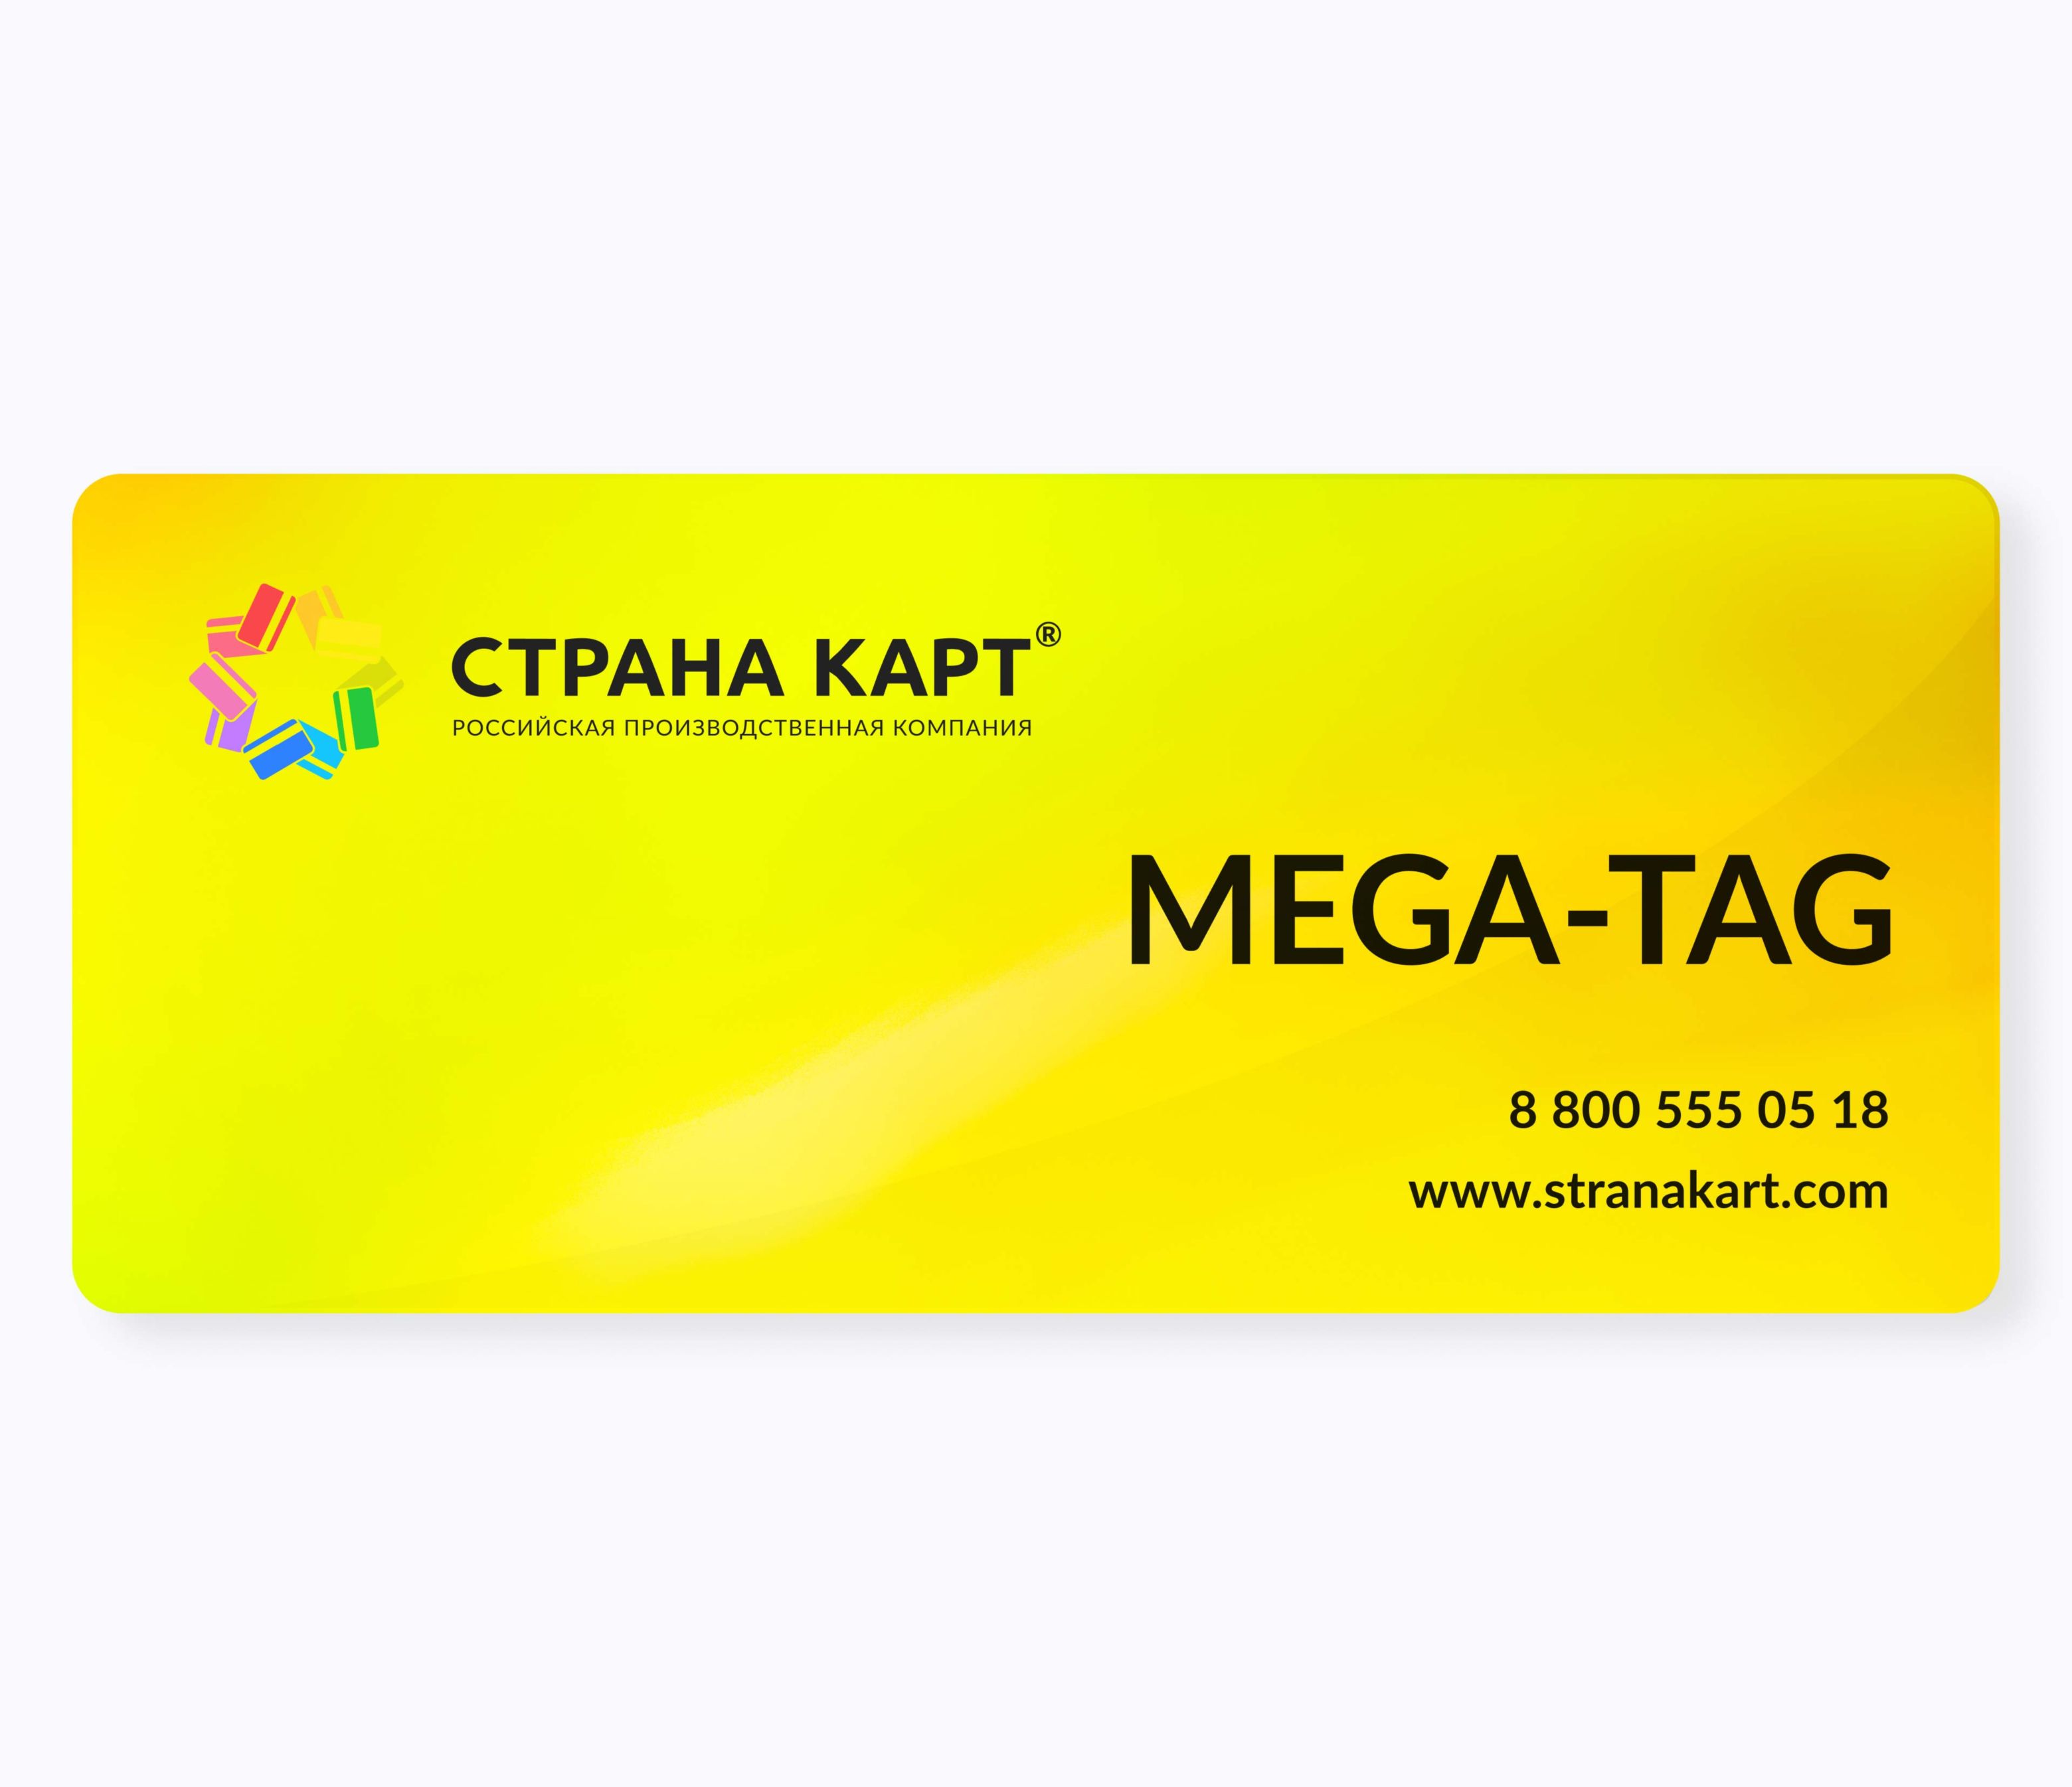 Пластиковые нестандартные букмекерские карты MEGA-TAG Пластиковые нестандартные букмекерские карты